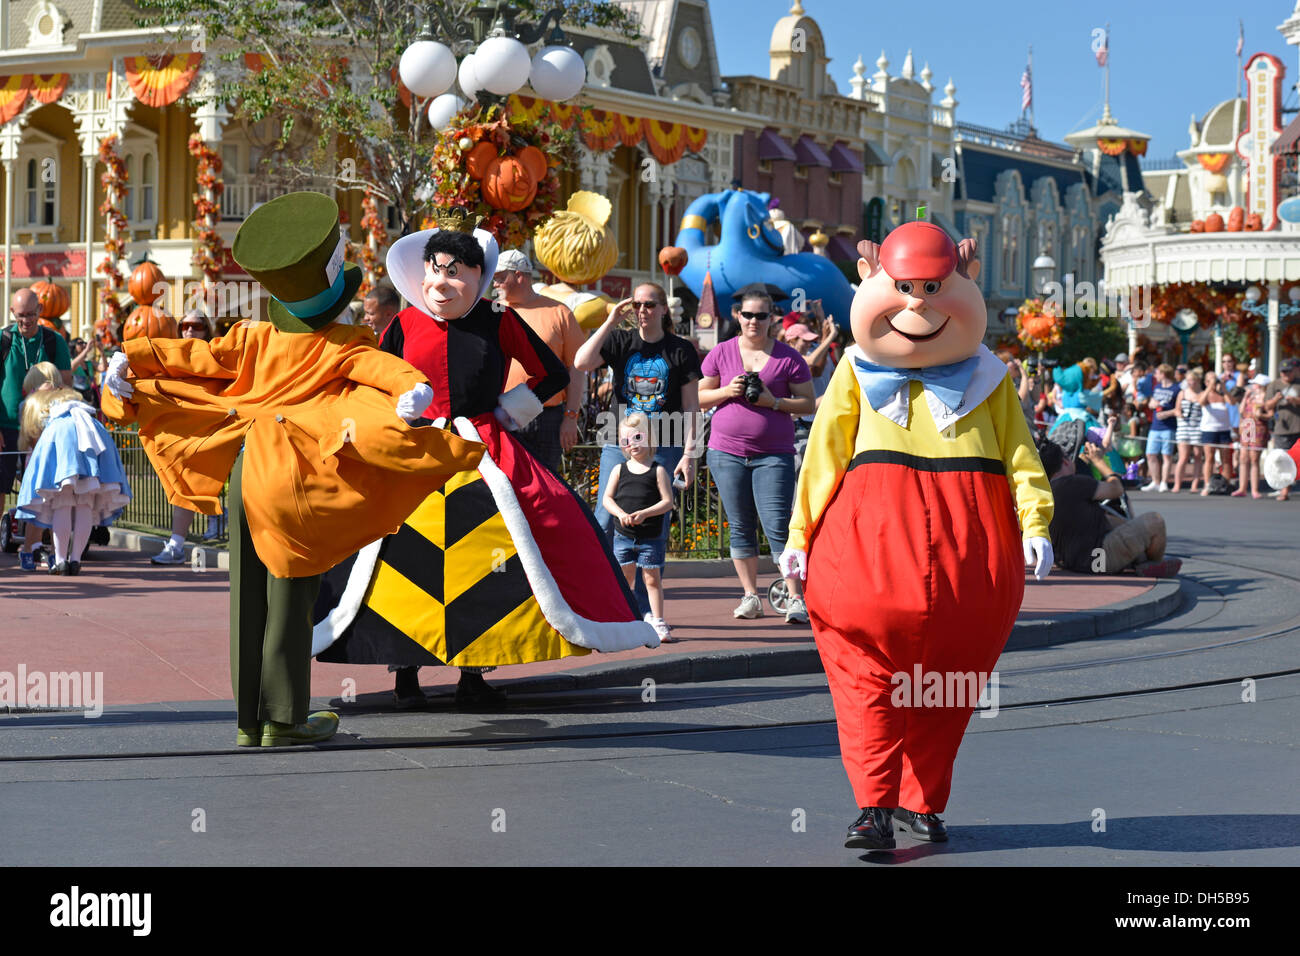 Les personnages Disney Tweedle Dee et Tweedle Dum, Mad Hatter, la Reine de Cœur à Parade à Magic Kingdom, Disney World, en Floride Banque D'Images